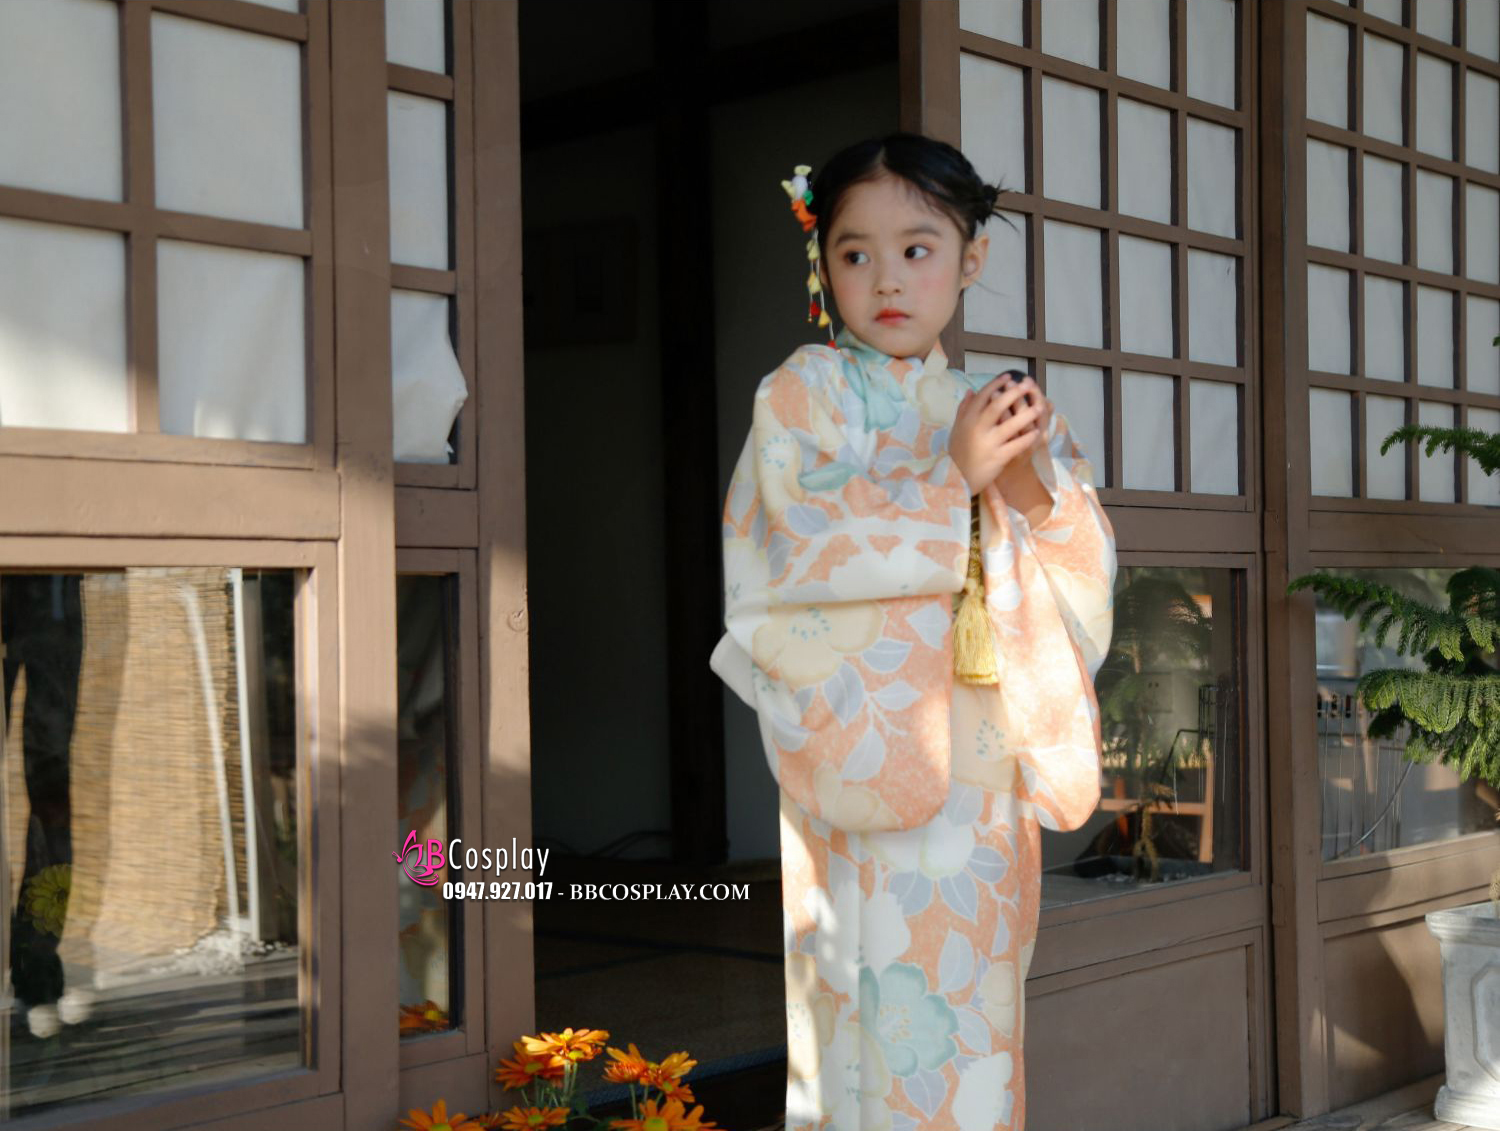 Kimono Bé Gái Chuẩn Nhật (HÀNG ORDER)